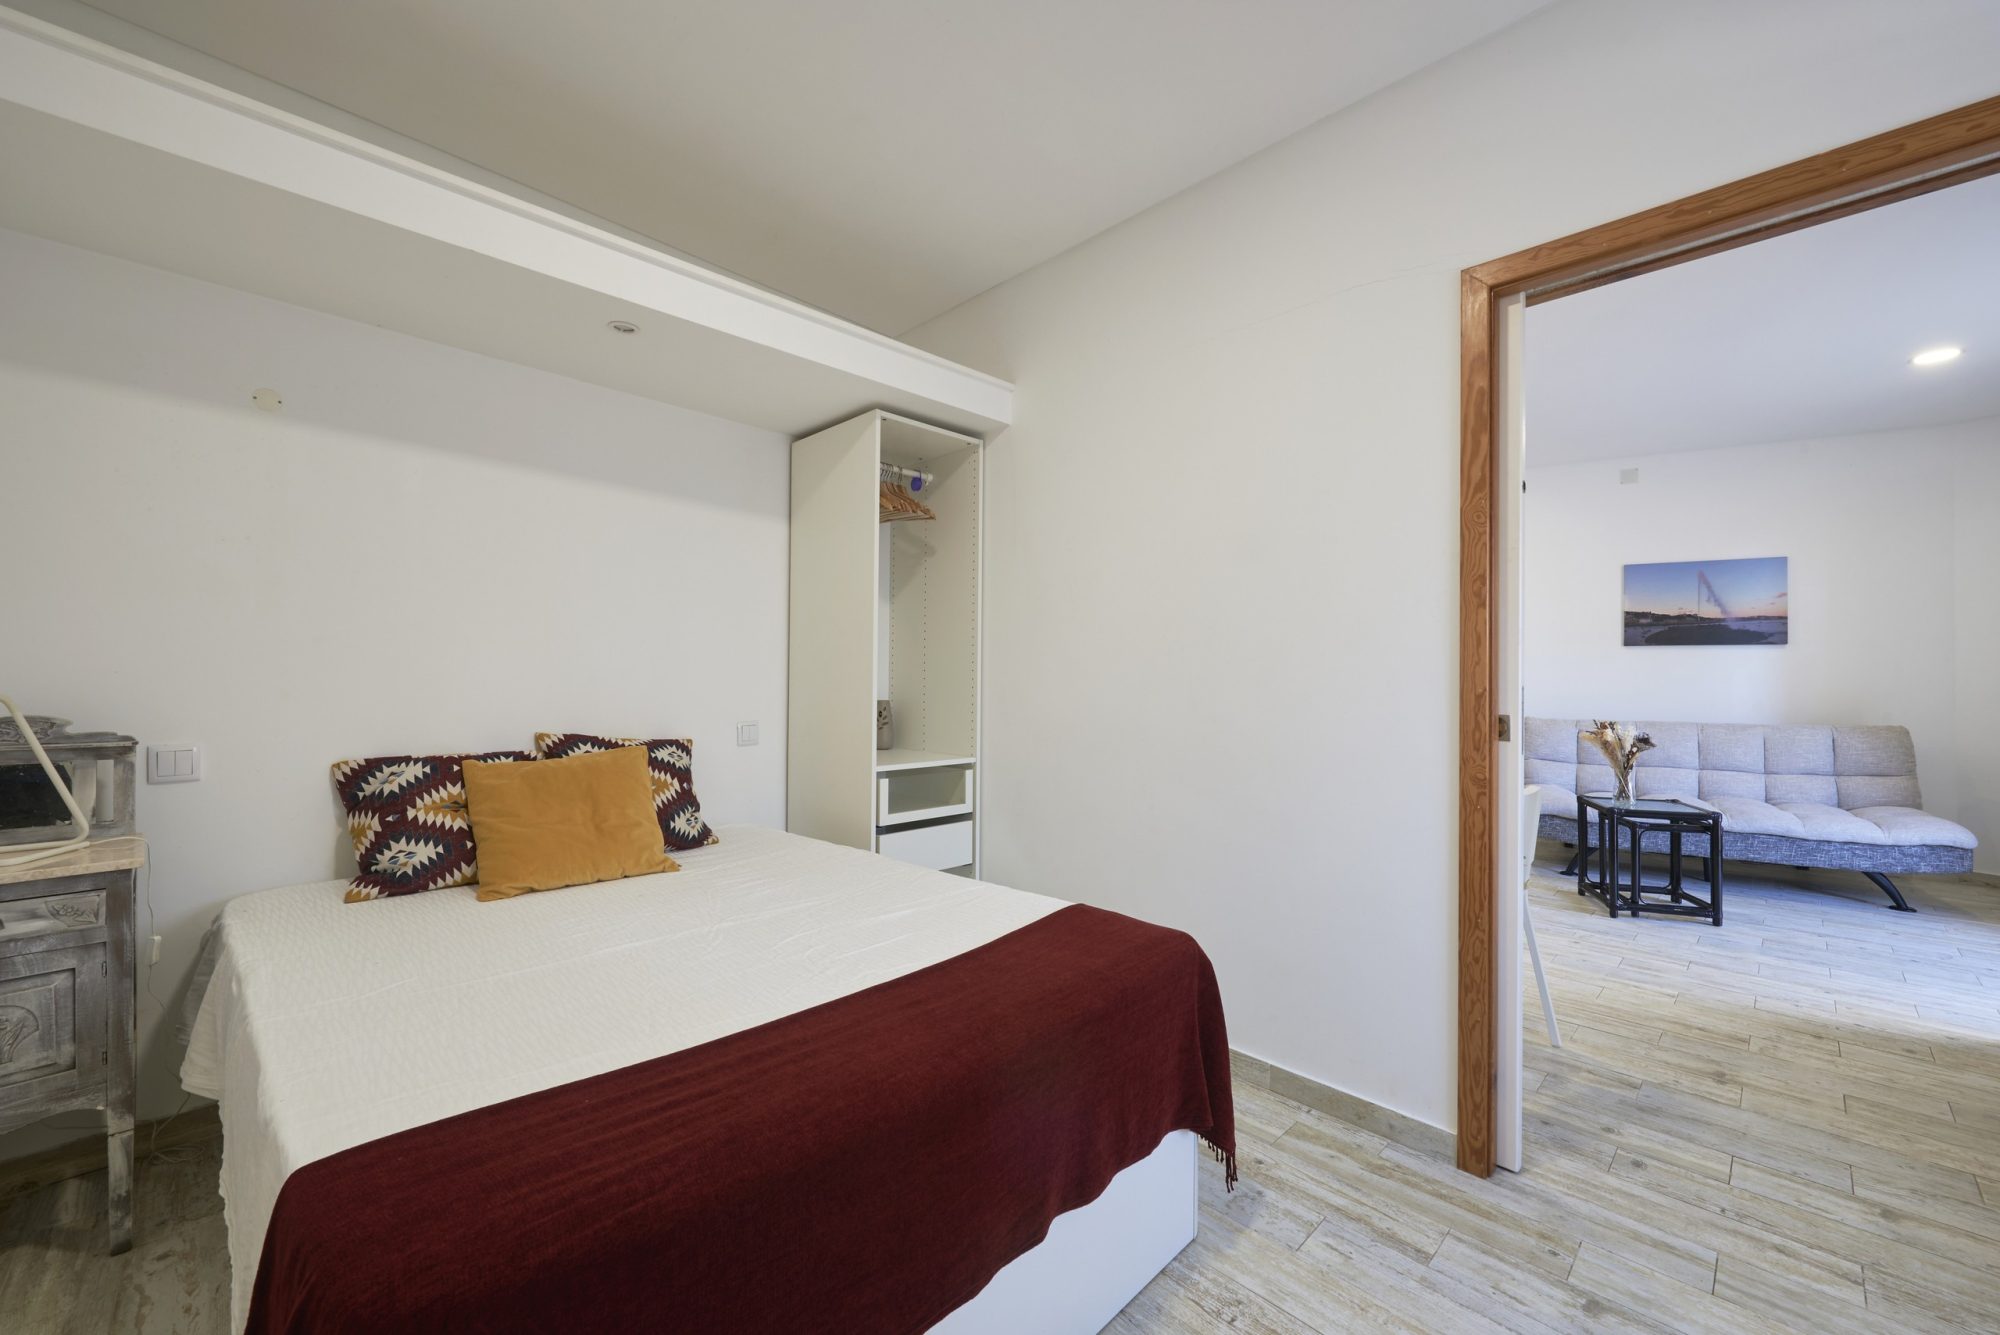 Rent Room Lisbon – Paço de Arcos 27# – Bedroom